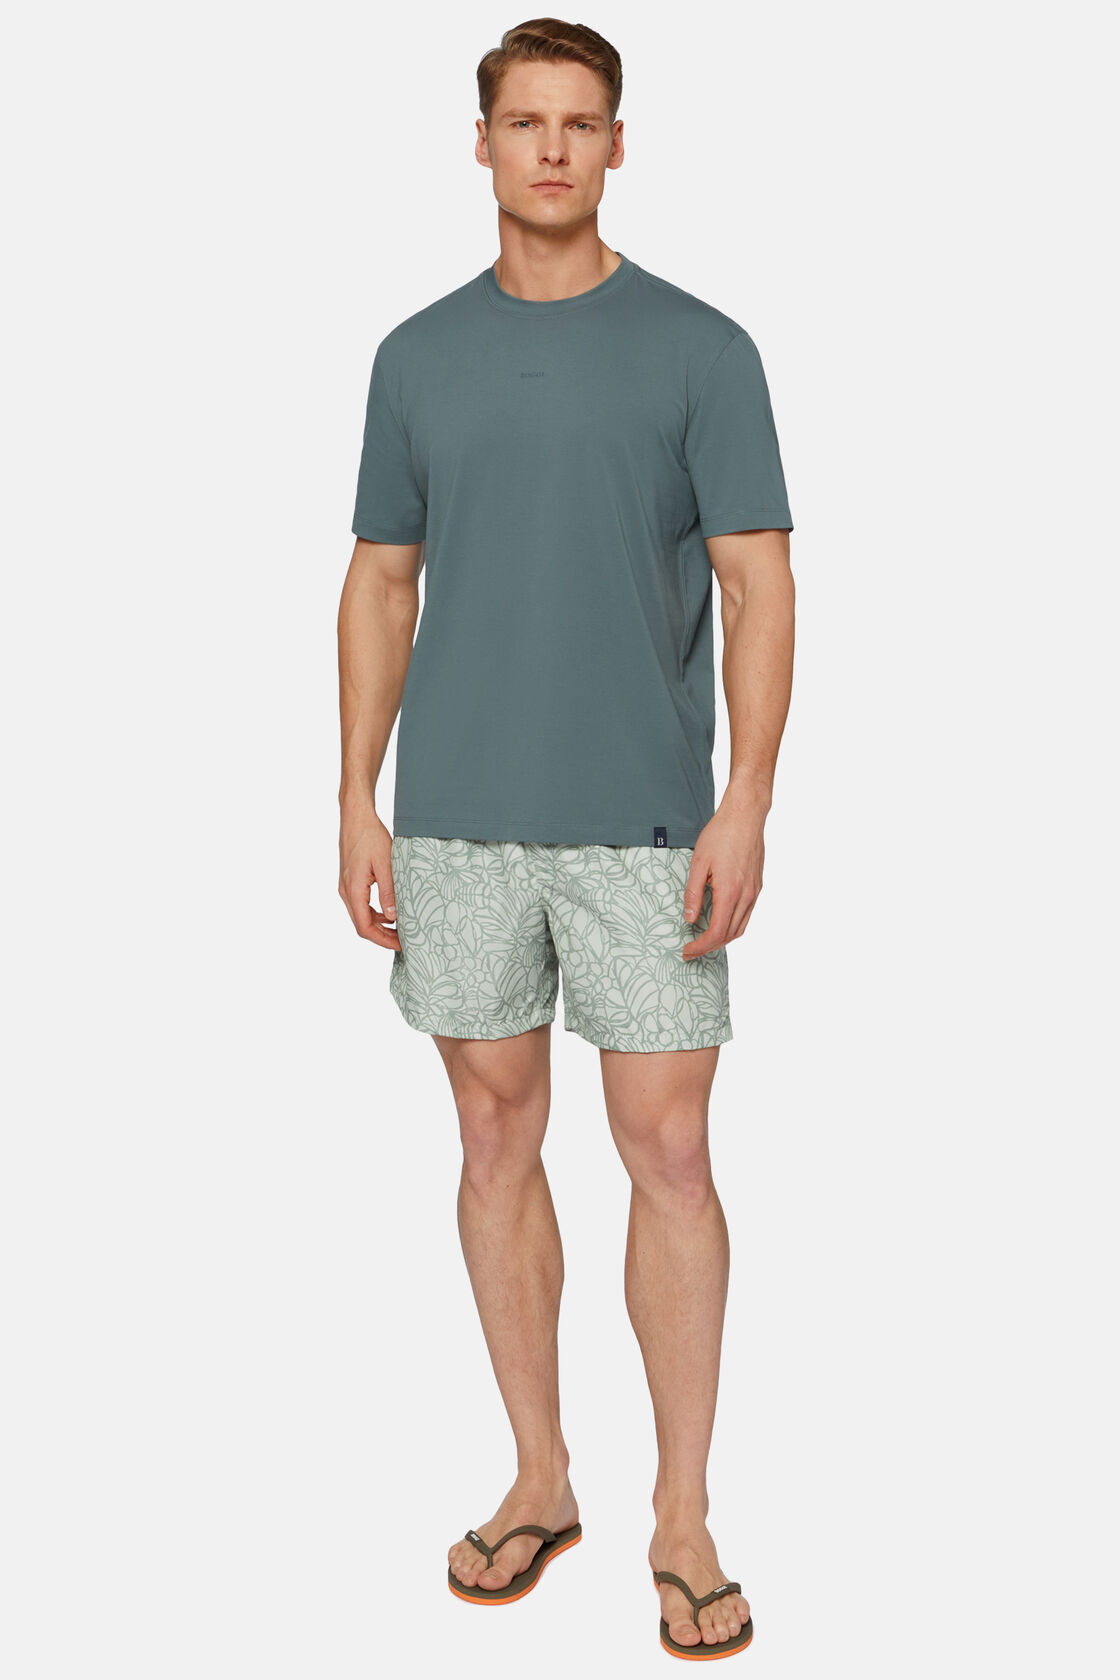 T-Shirt aus elastischer Supima-Baumwolle, Grün, hi-res